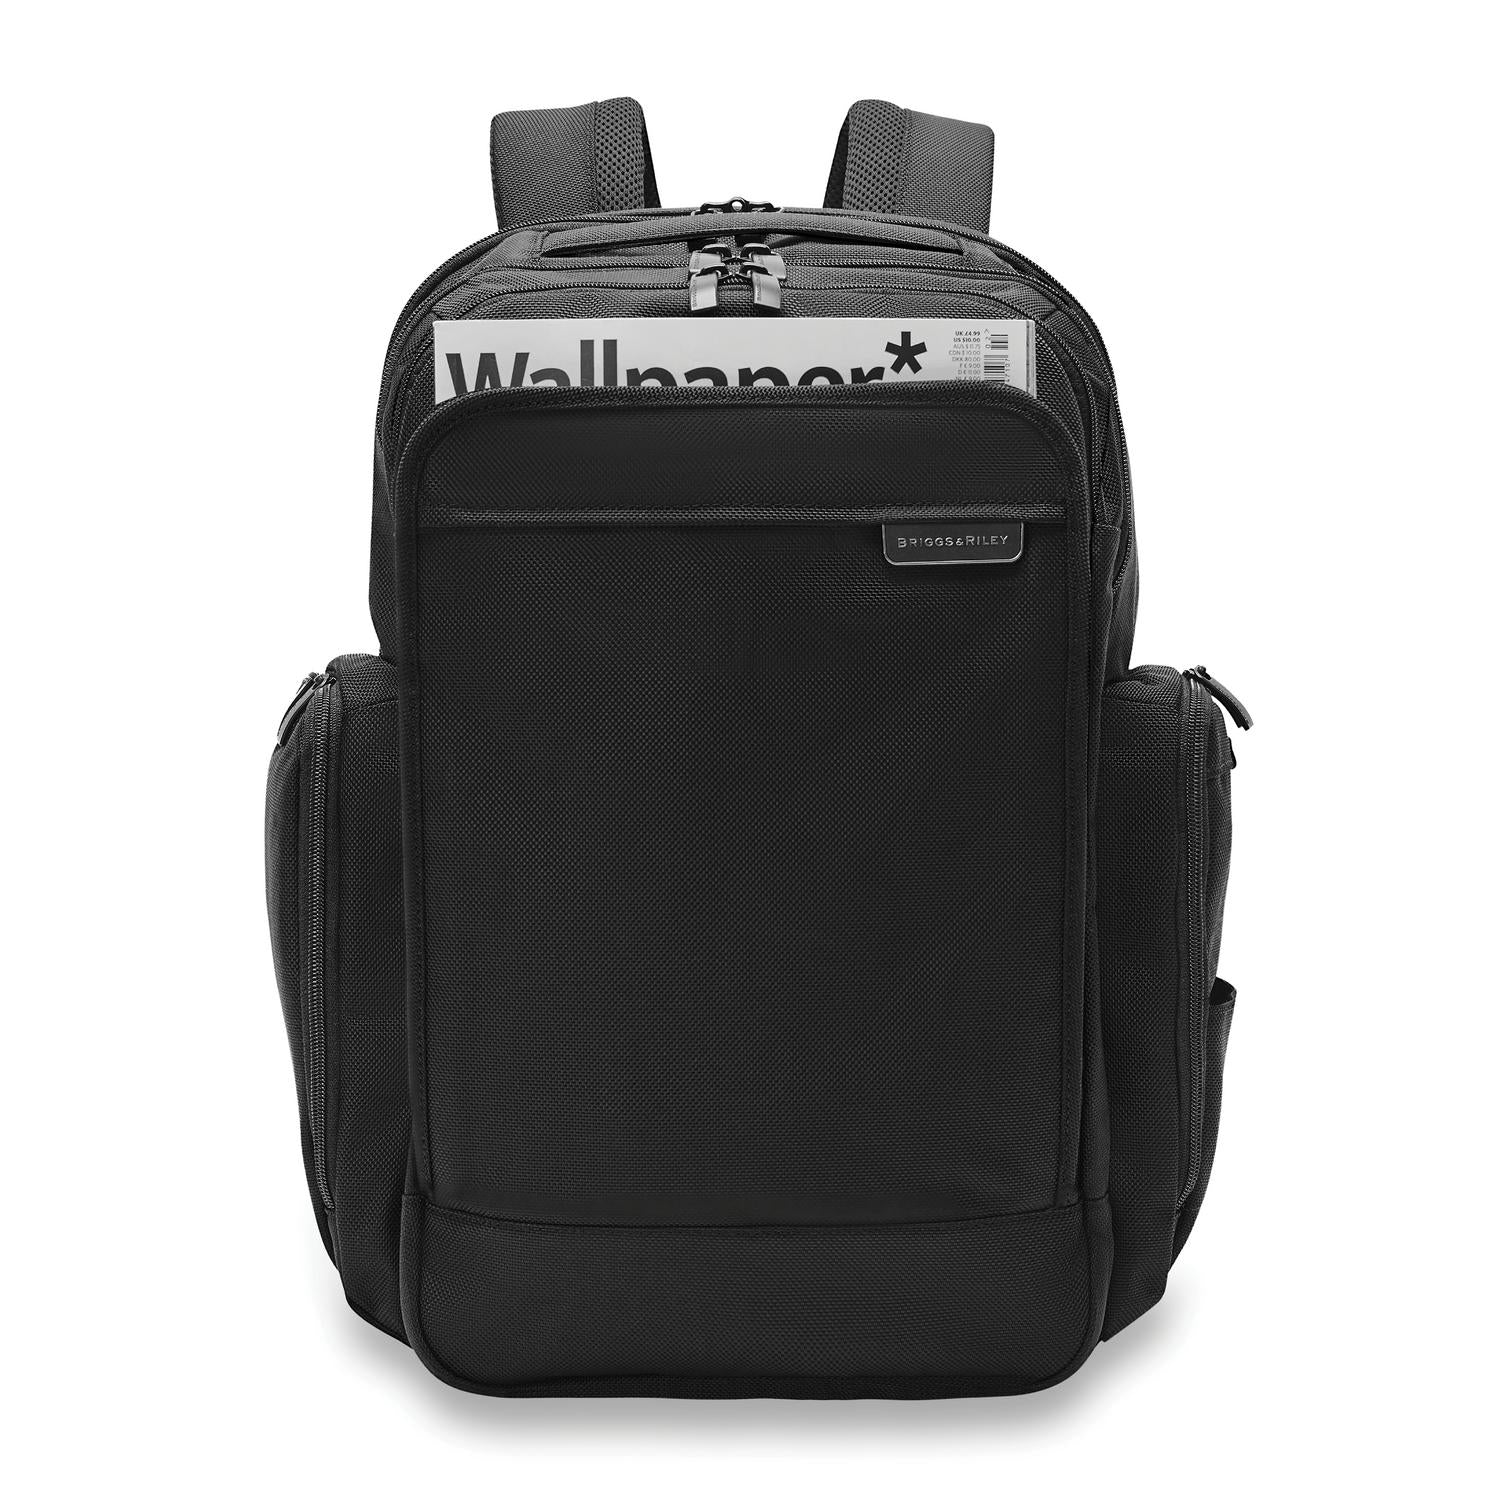 Briggs & Riley Baseline BL300-4 Traveler Backpack